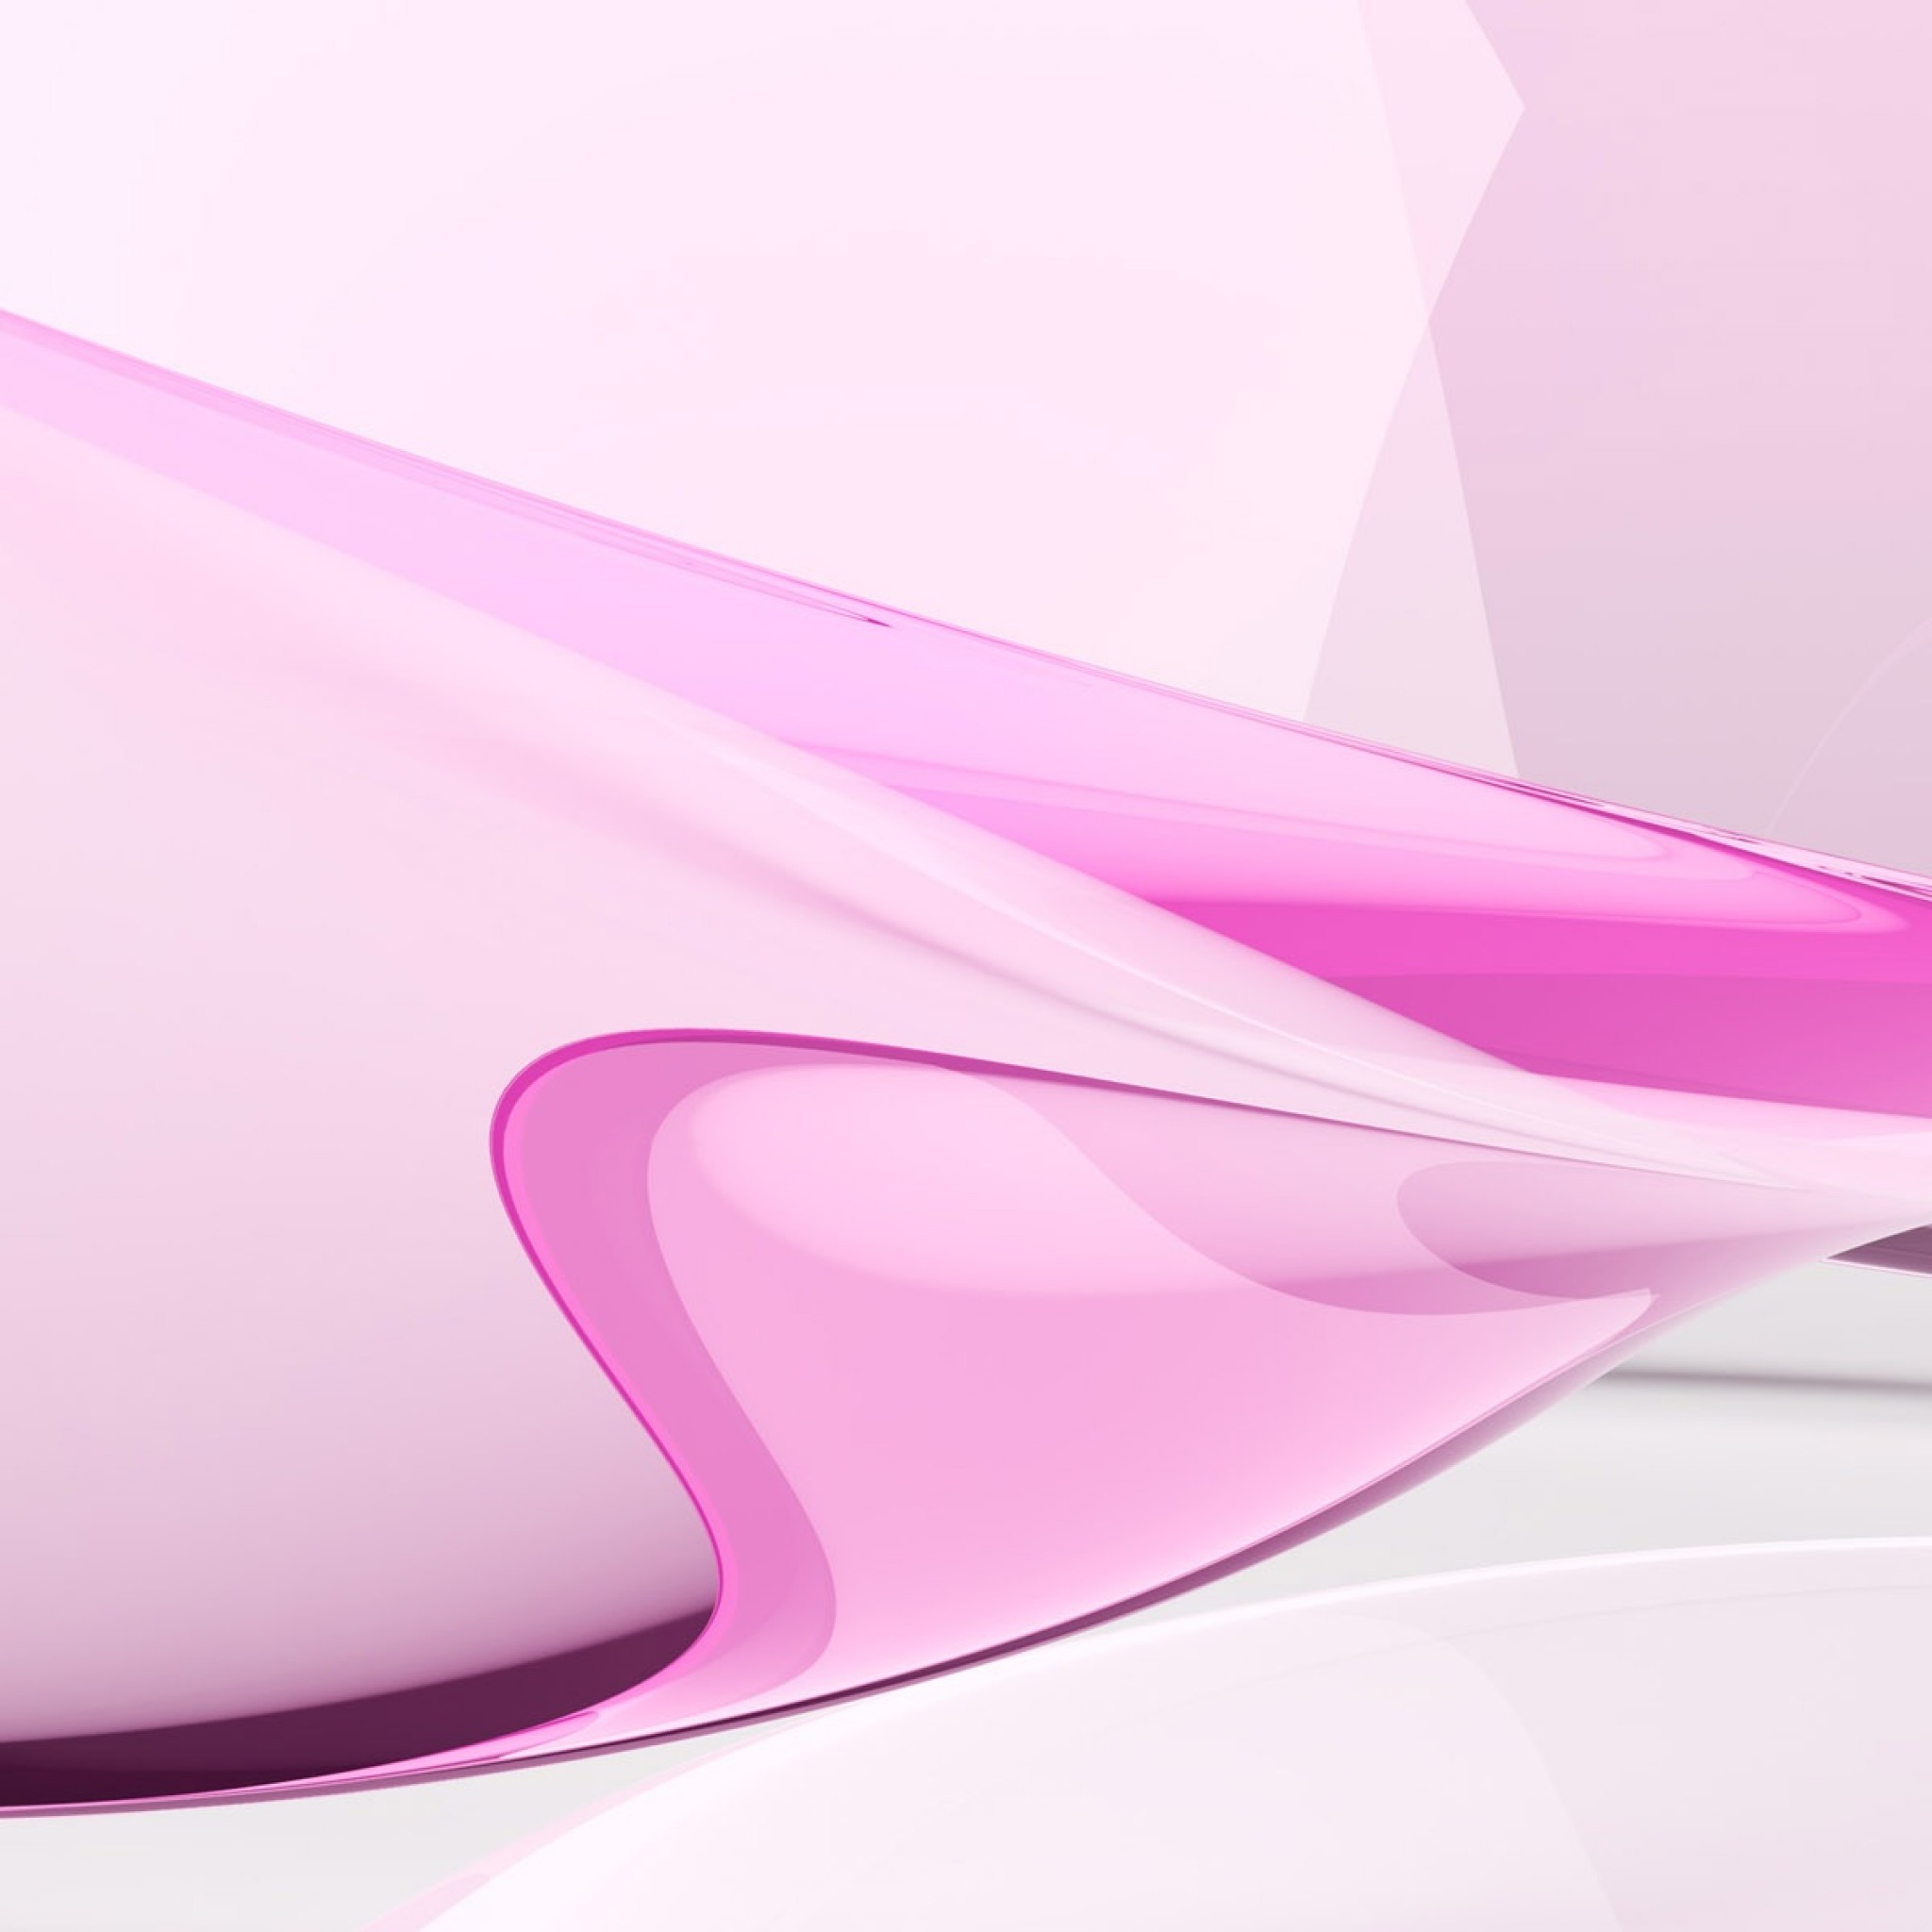 Ja Topwalls Net デスクトップの壁紙ピンクの抽象的なデザイン Ipad タブレット壁紙ギャラリー